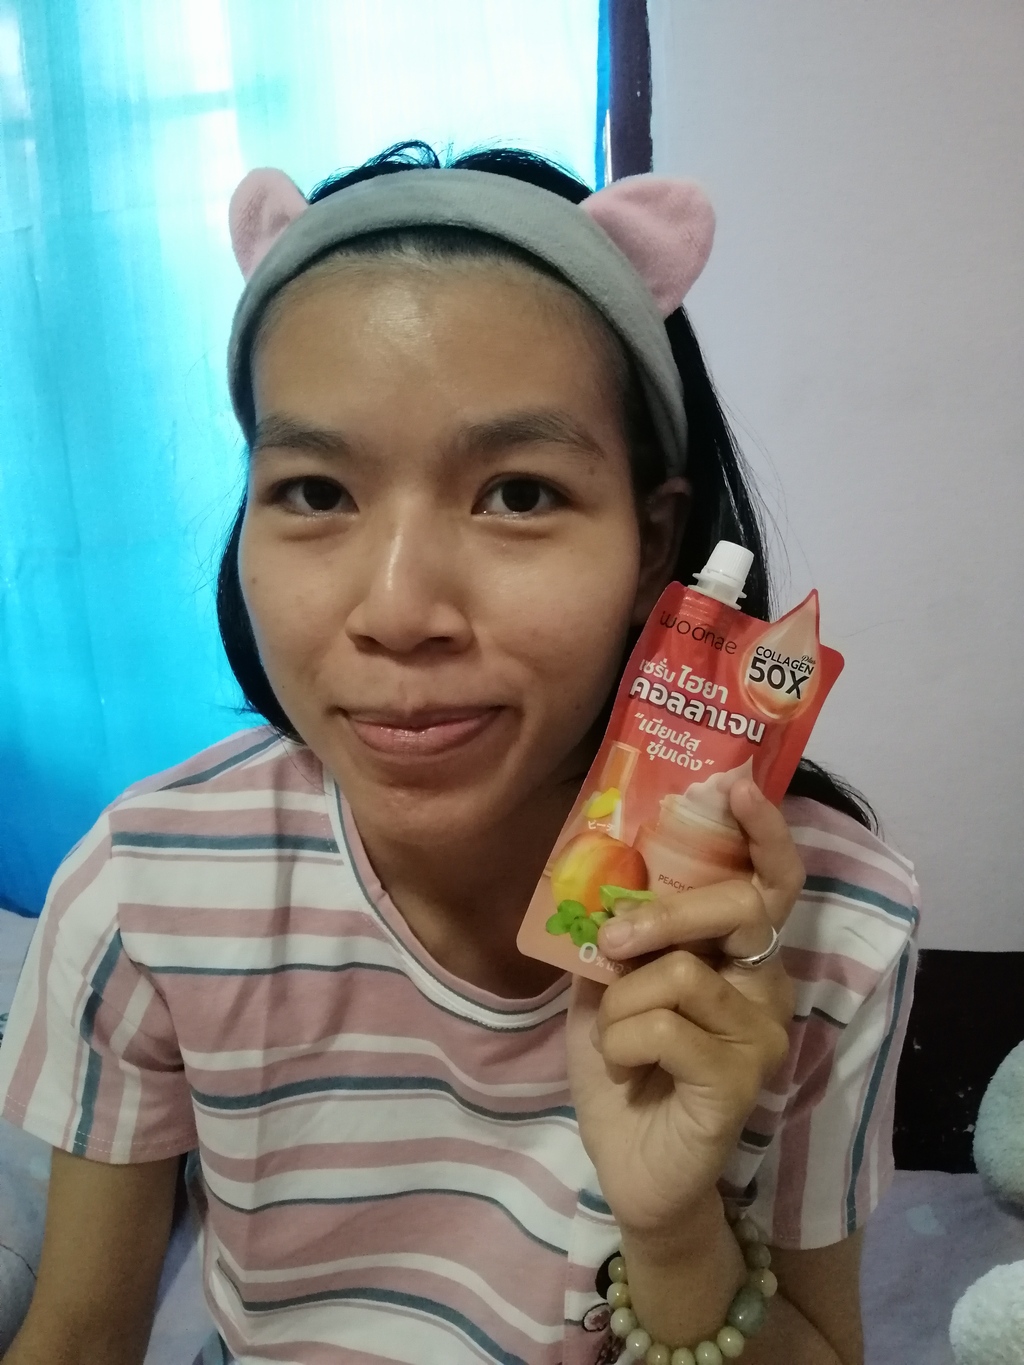 Woonae Peach Collagen Hya 9X Power Serum 50 g รีวิว